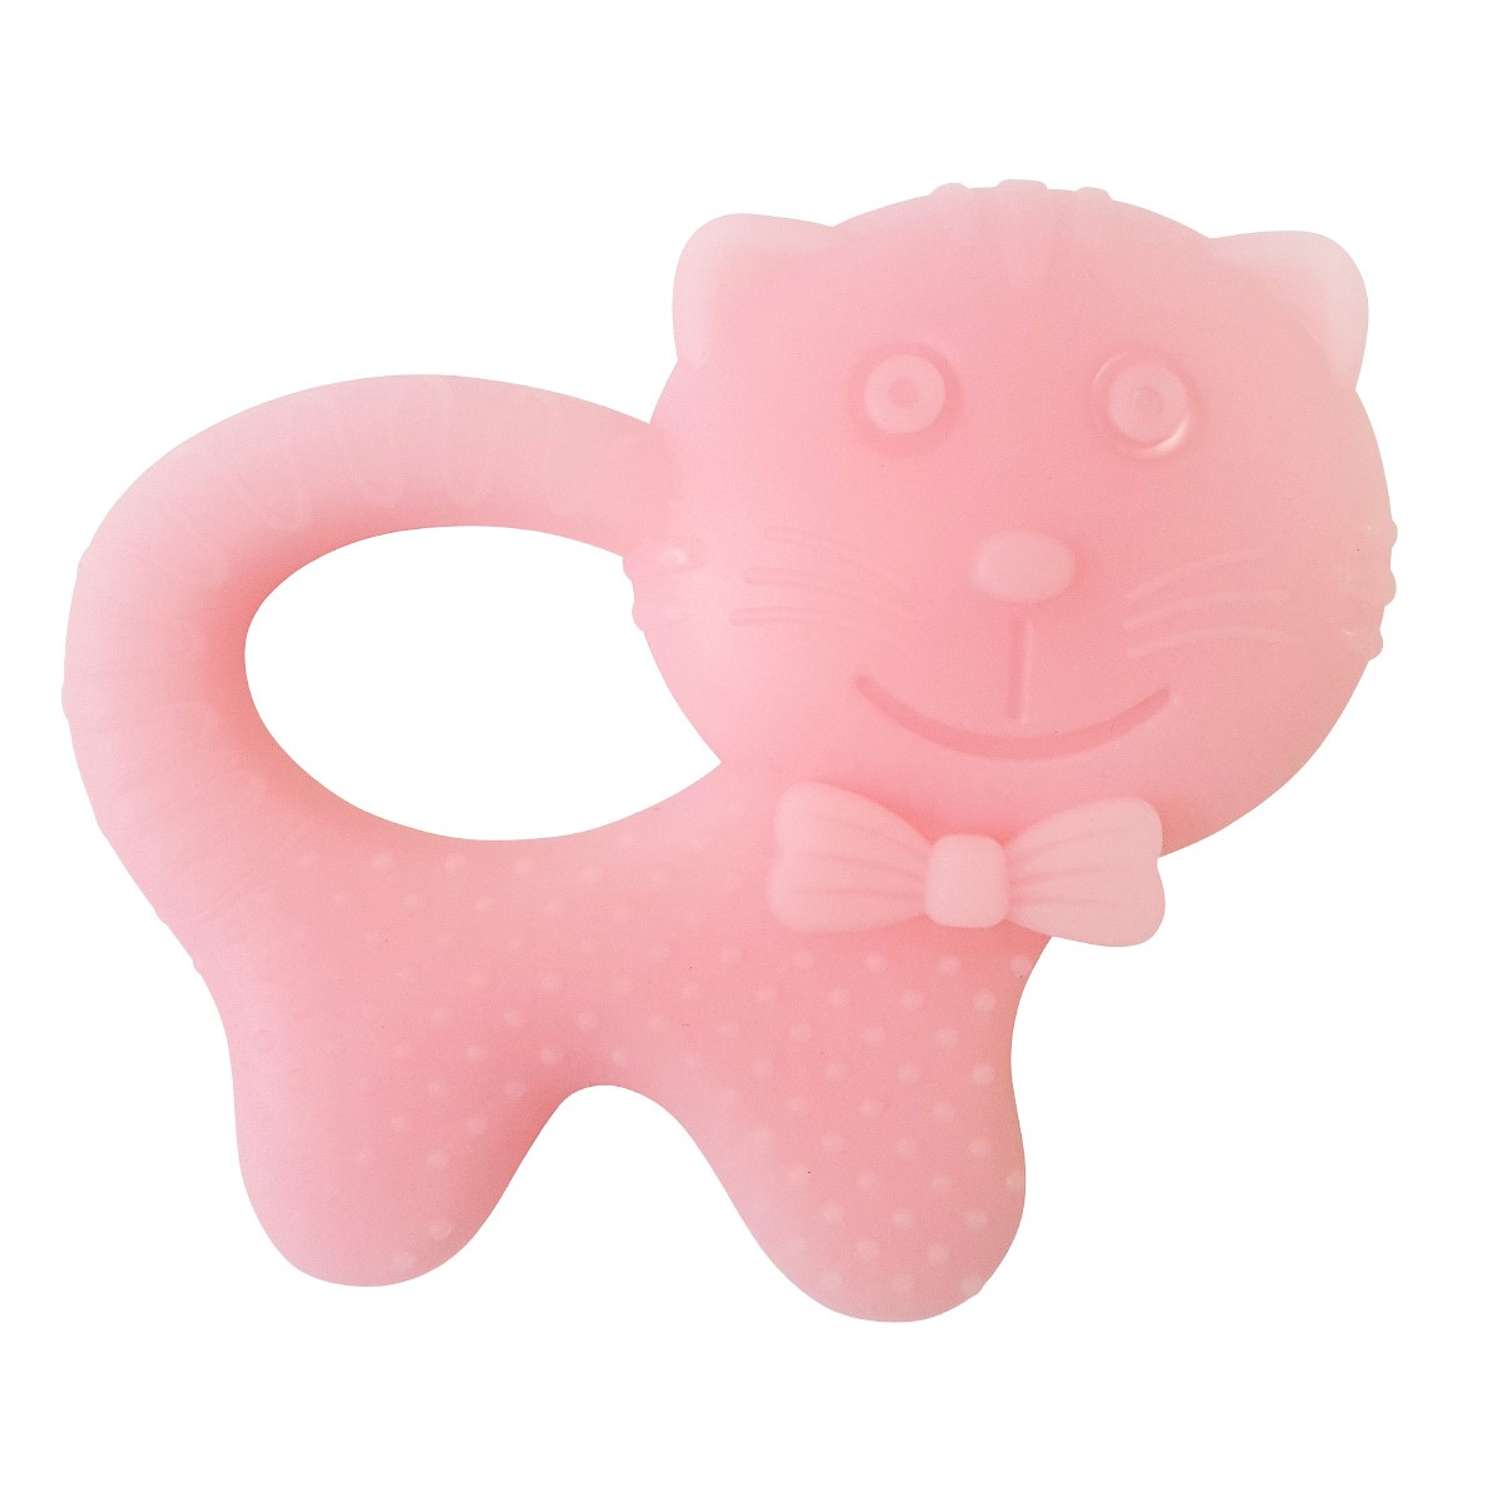 Прорезыватель Uviton из пищевого силикона Арт. 0201 котик розовый - фото 1